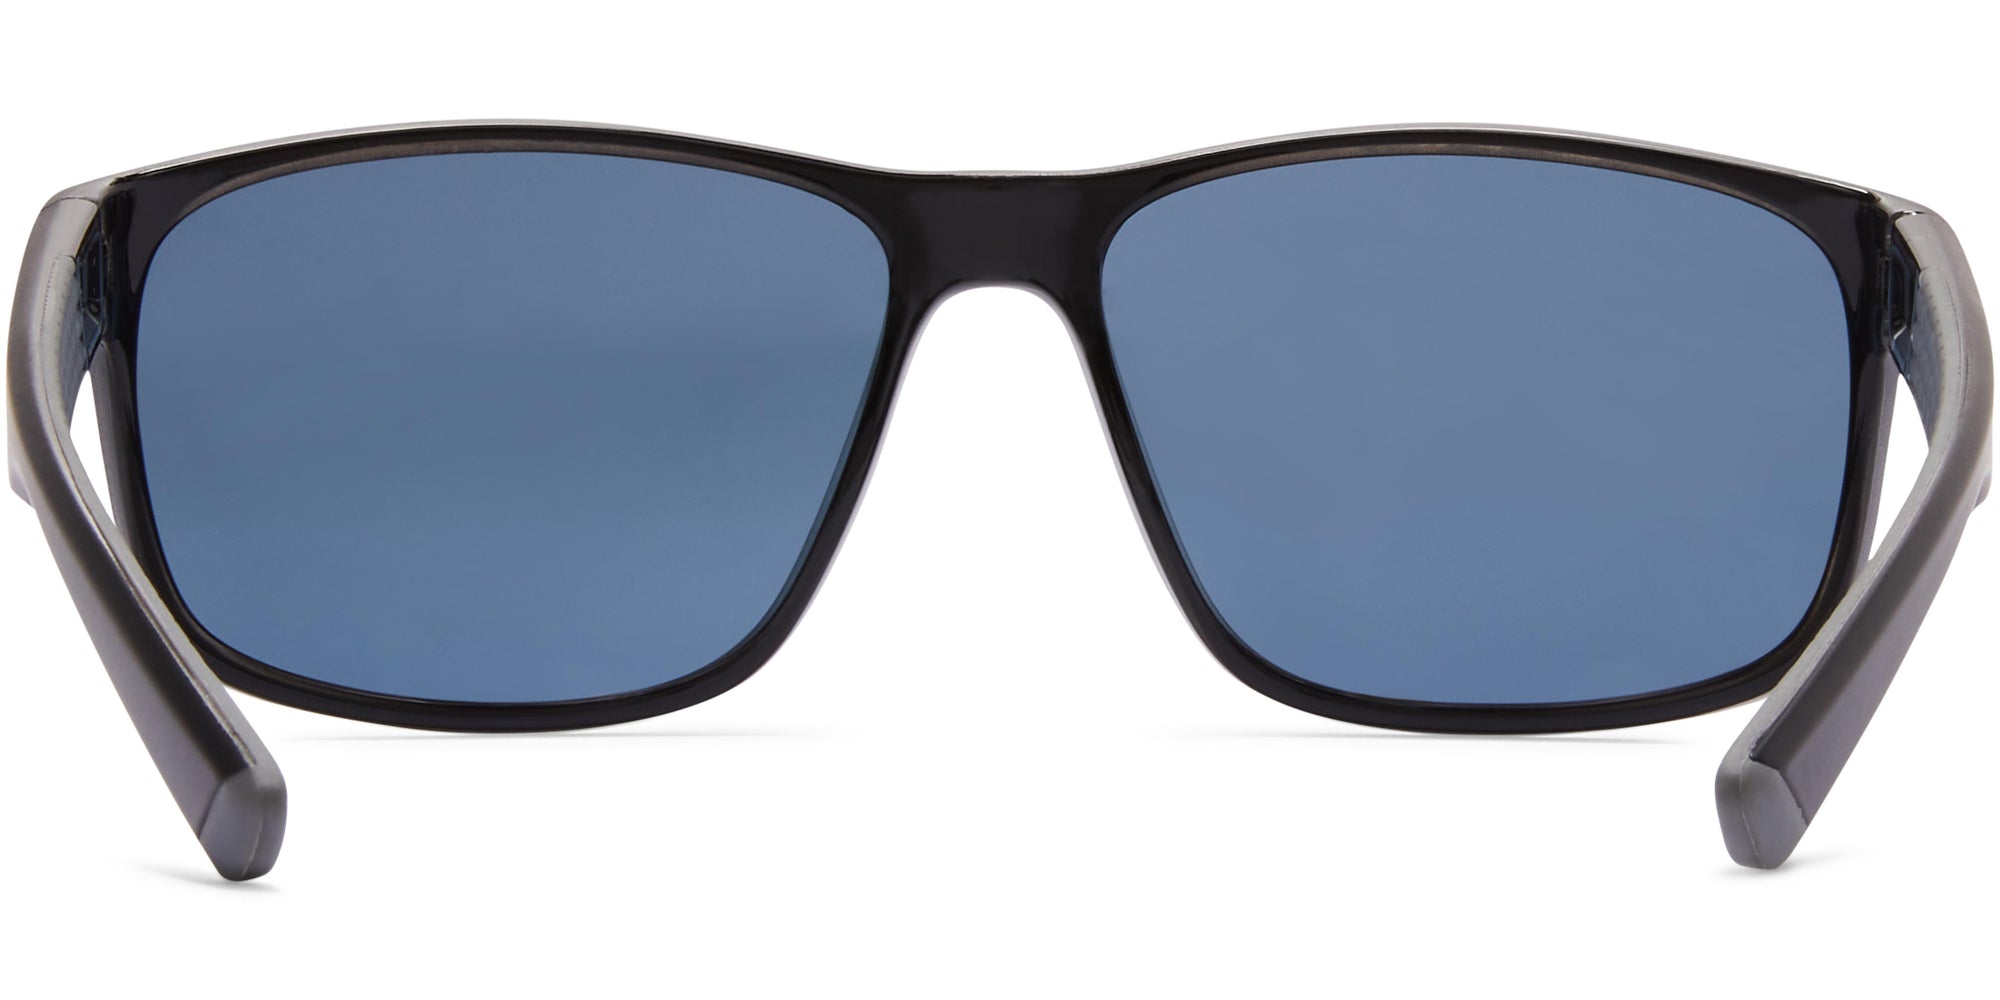 Roy - Polarized Sunglasses